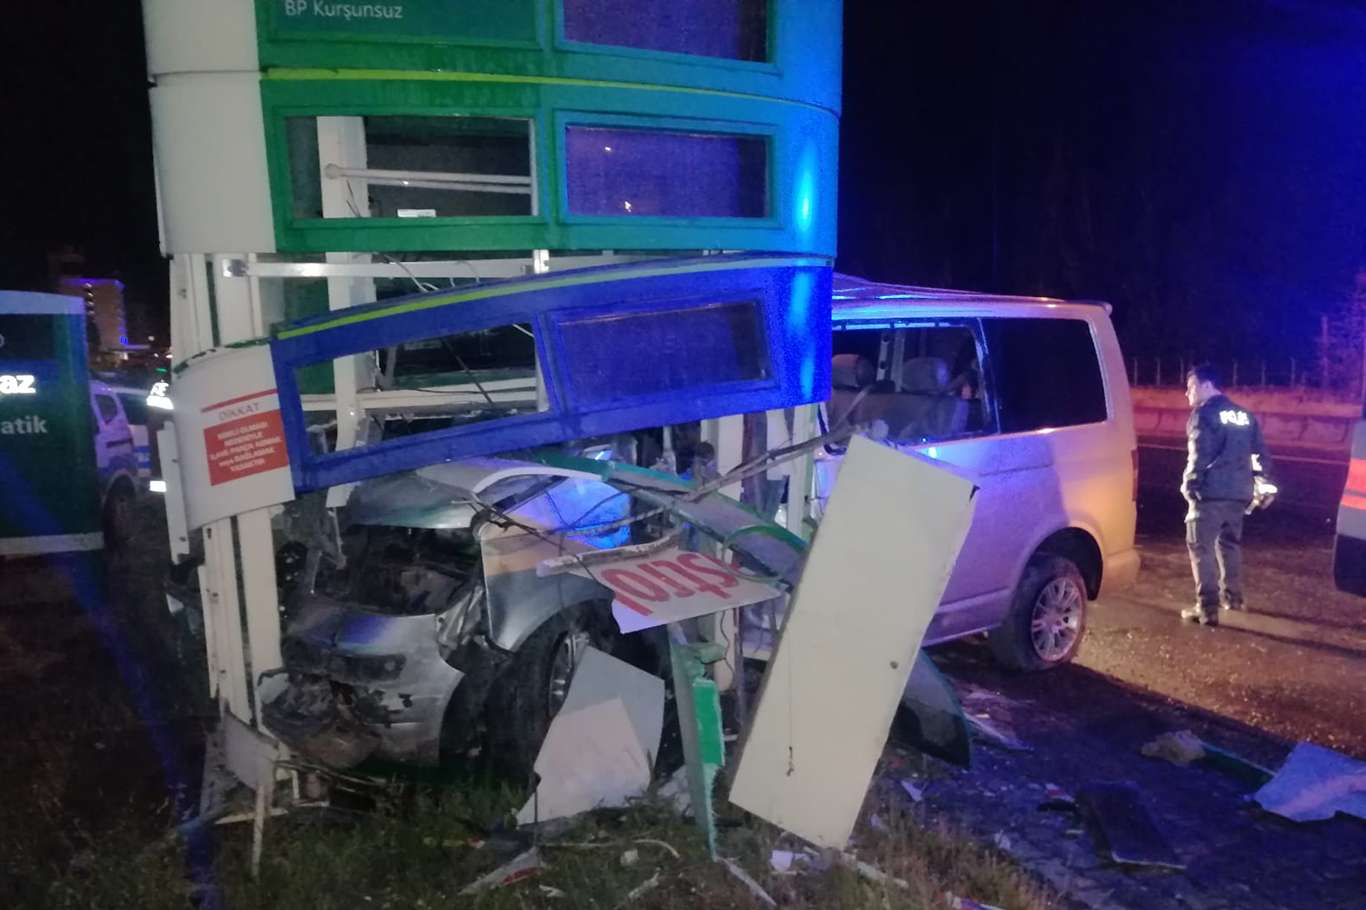 Ağrı'da sürücüsünün direksiyon hâkimiyetini kaybettiği araç fiyat panosuna çarptı: 2 ölü, 1 yaralı